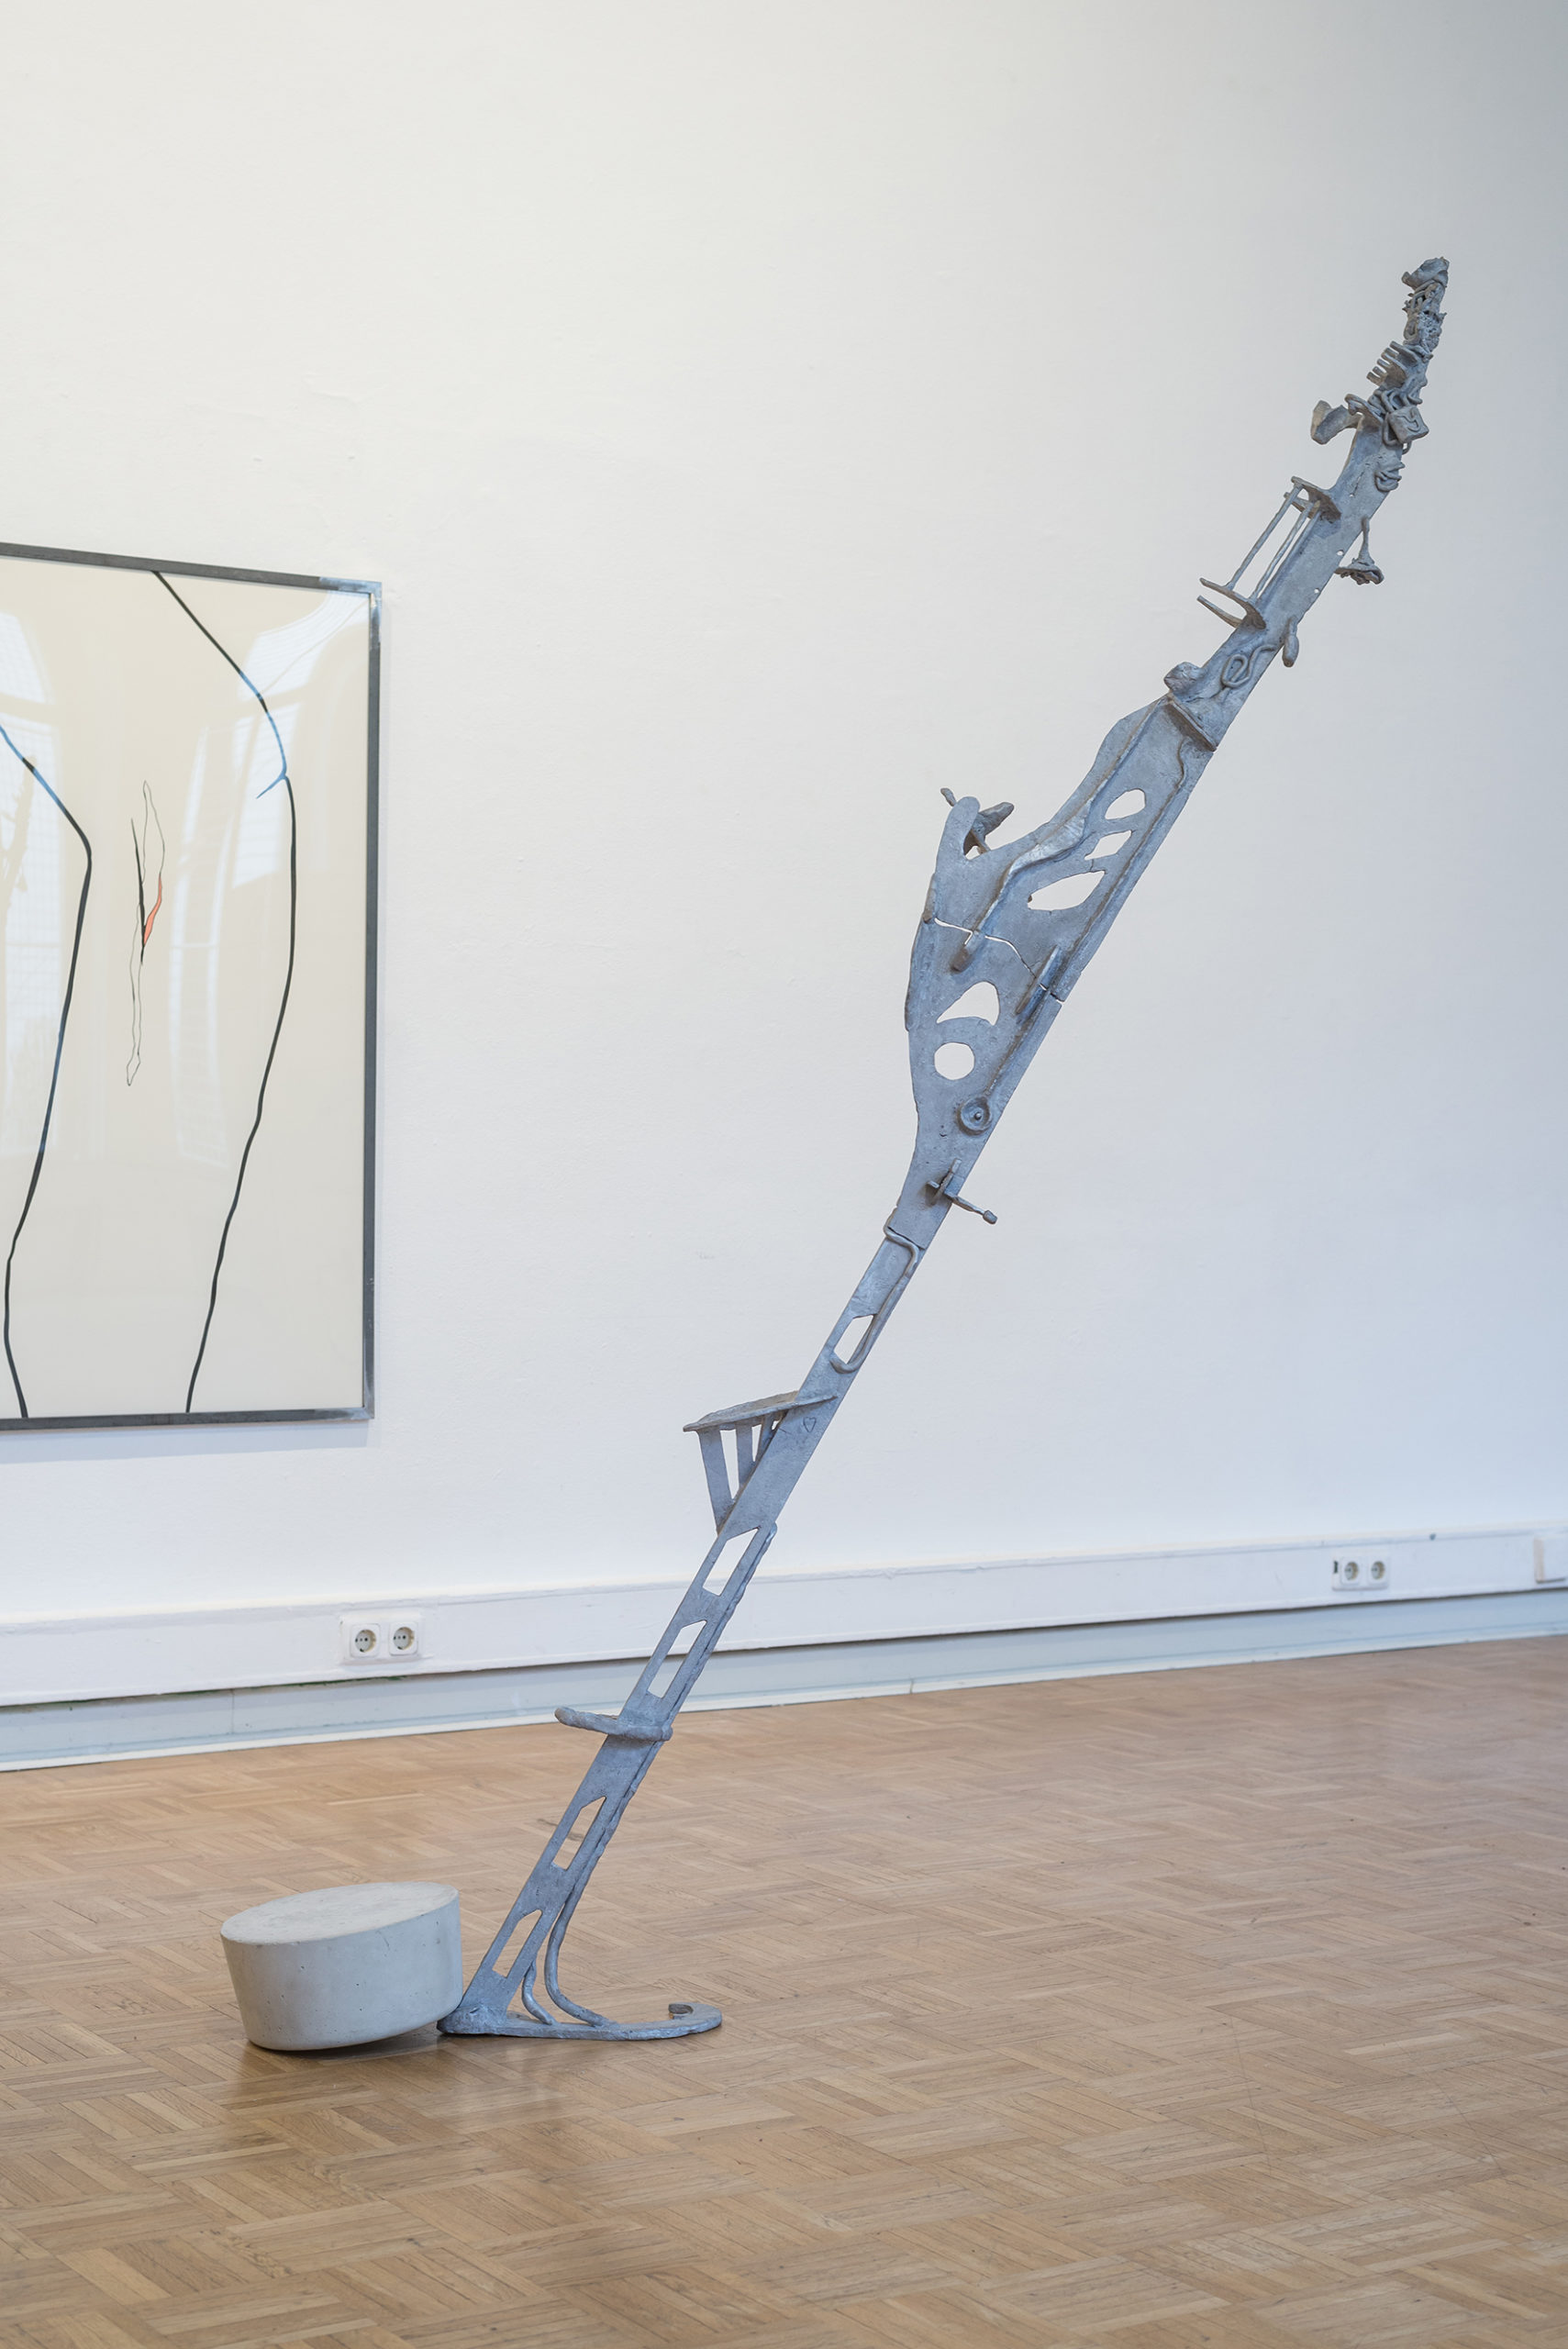 ANNEX, Doppelausstellung von Paul Schuseil und Stefan Seelge, Ausstellungsansicht Kunstverein Bellevue-Saal Wiesbaden März 2020(Foto: Dirk Uebele)